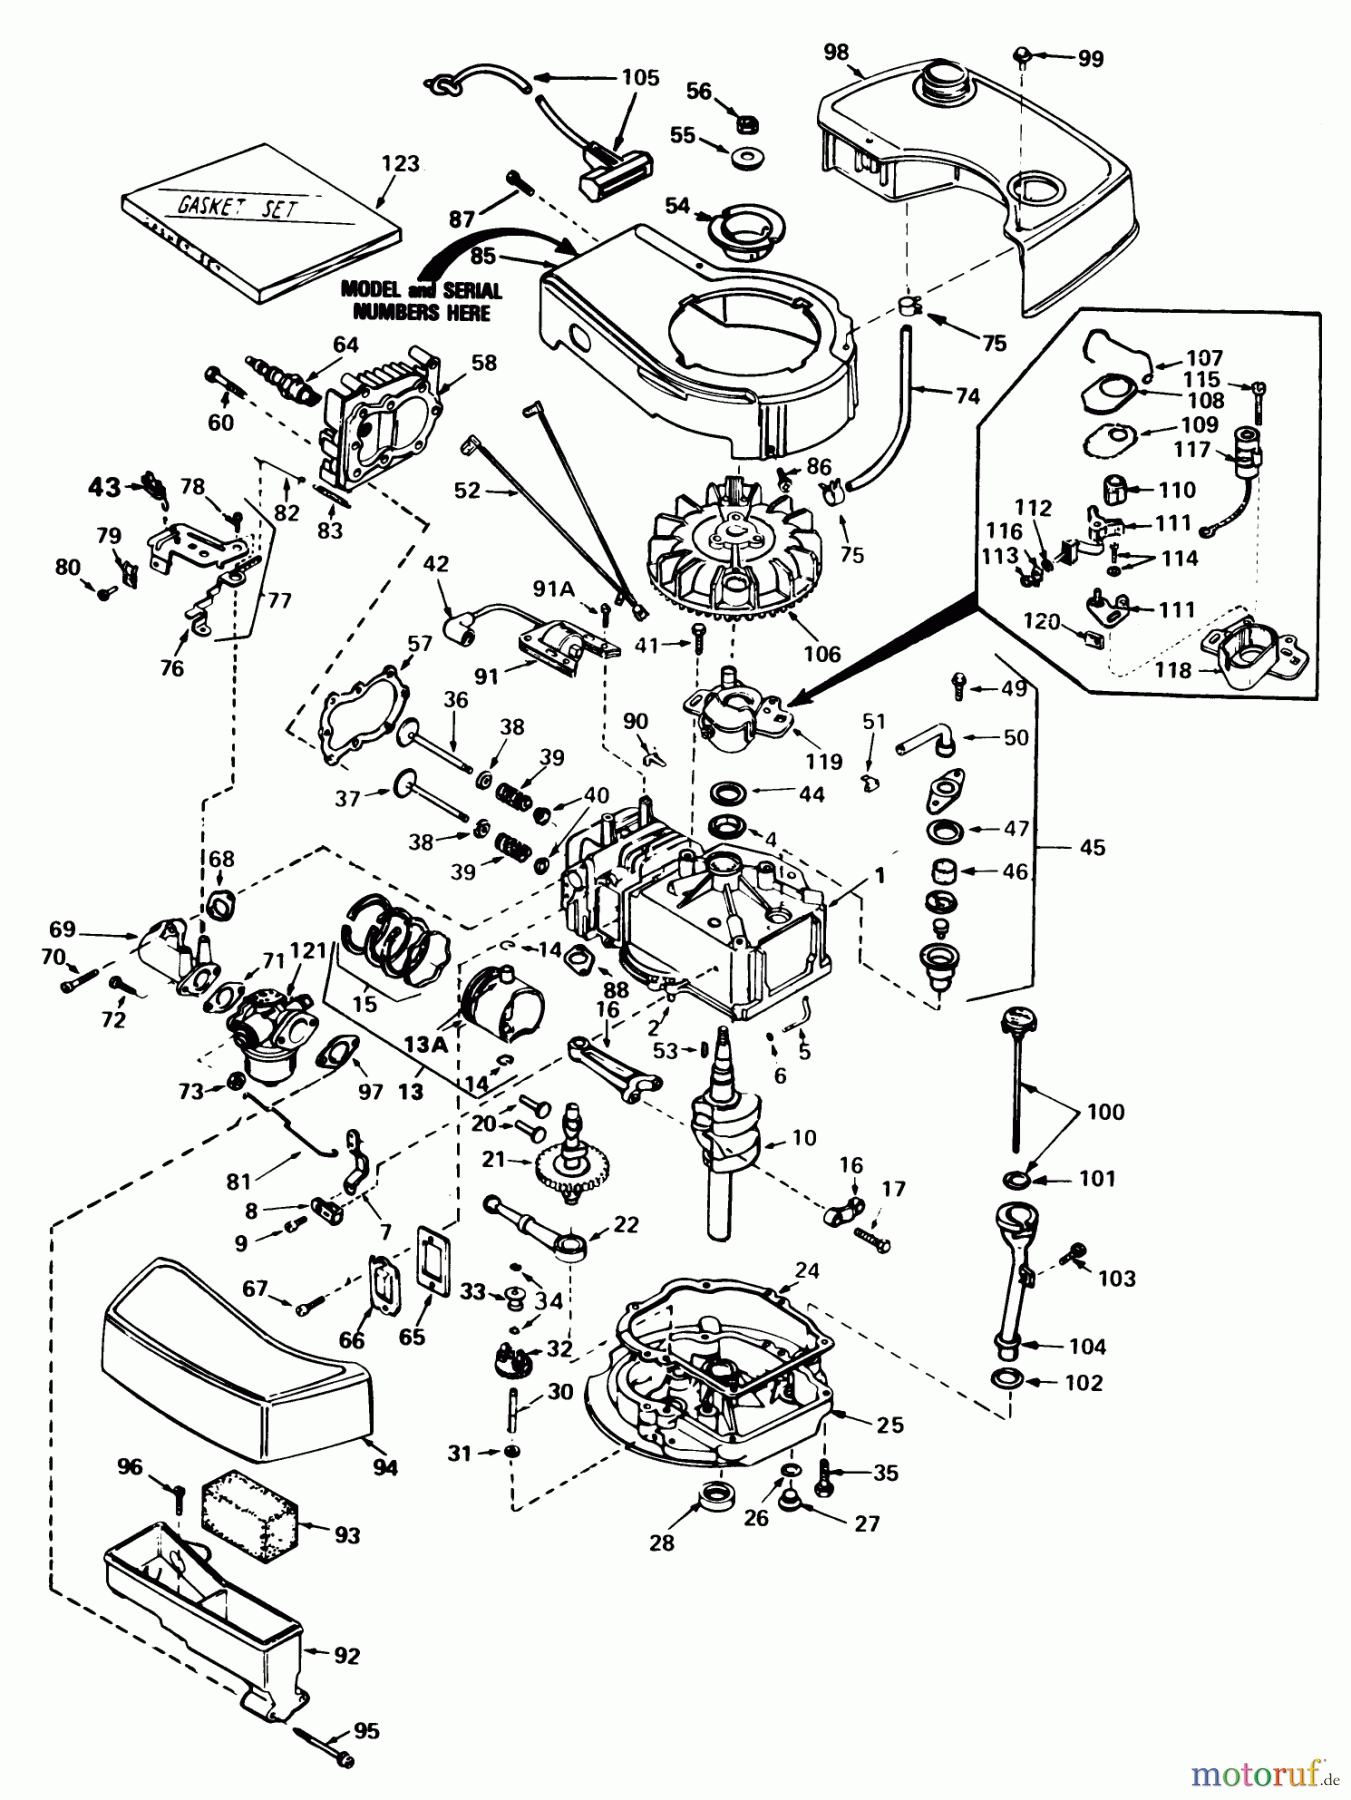  Toro Neu Mowers, Walk-Behind Seite 1 20790 - Toro Lawnmower, 1982 (2000001-2999999) ENGINE TECUMSEH MODEL NO. TNT 100-10061D